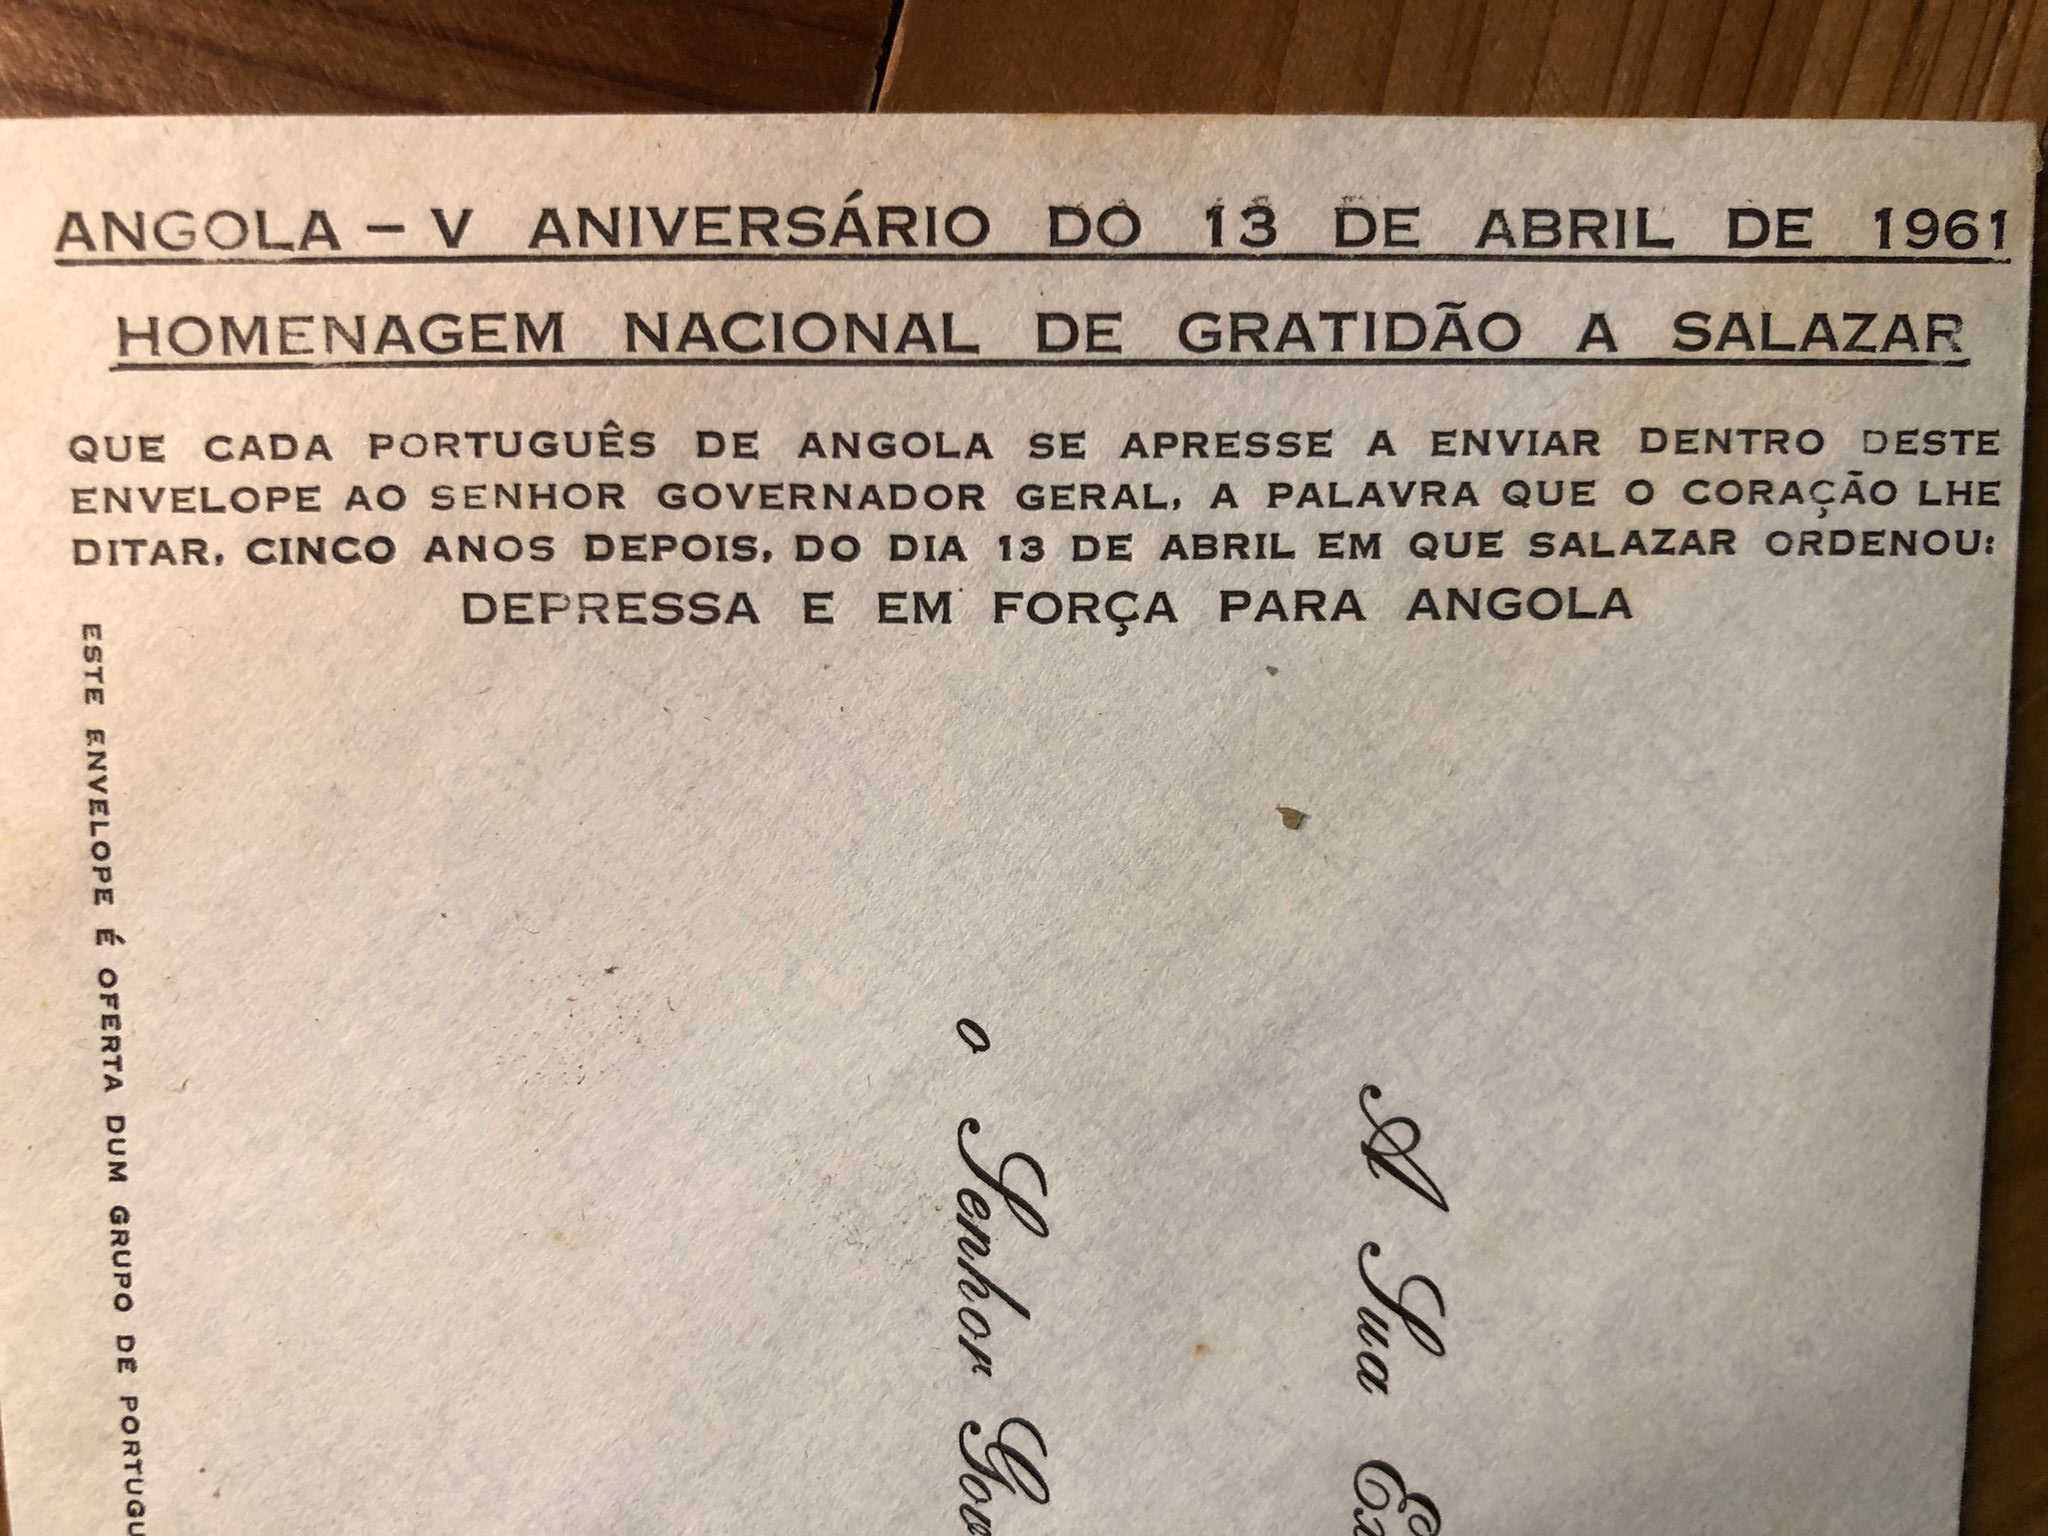 Envelope “Angola V Aniversário do 13 Abril de 1961”